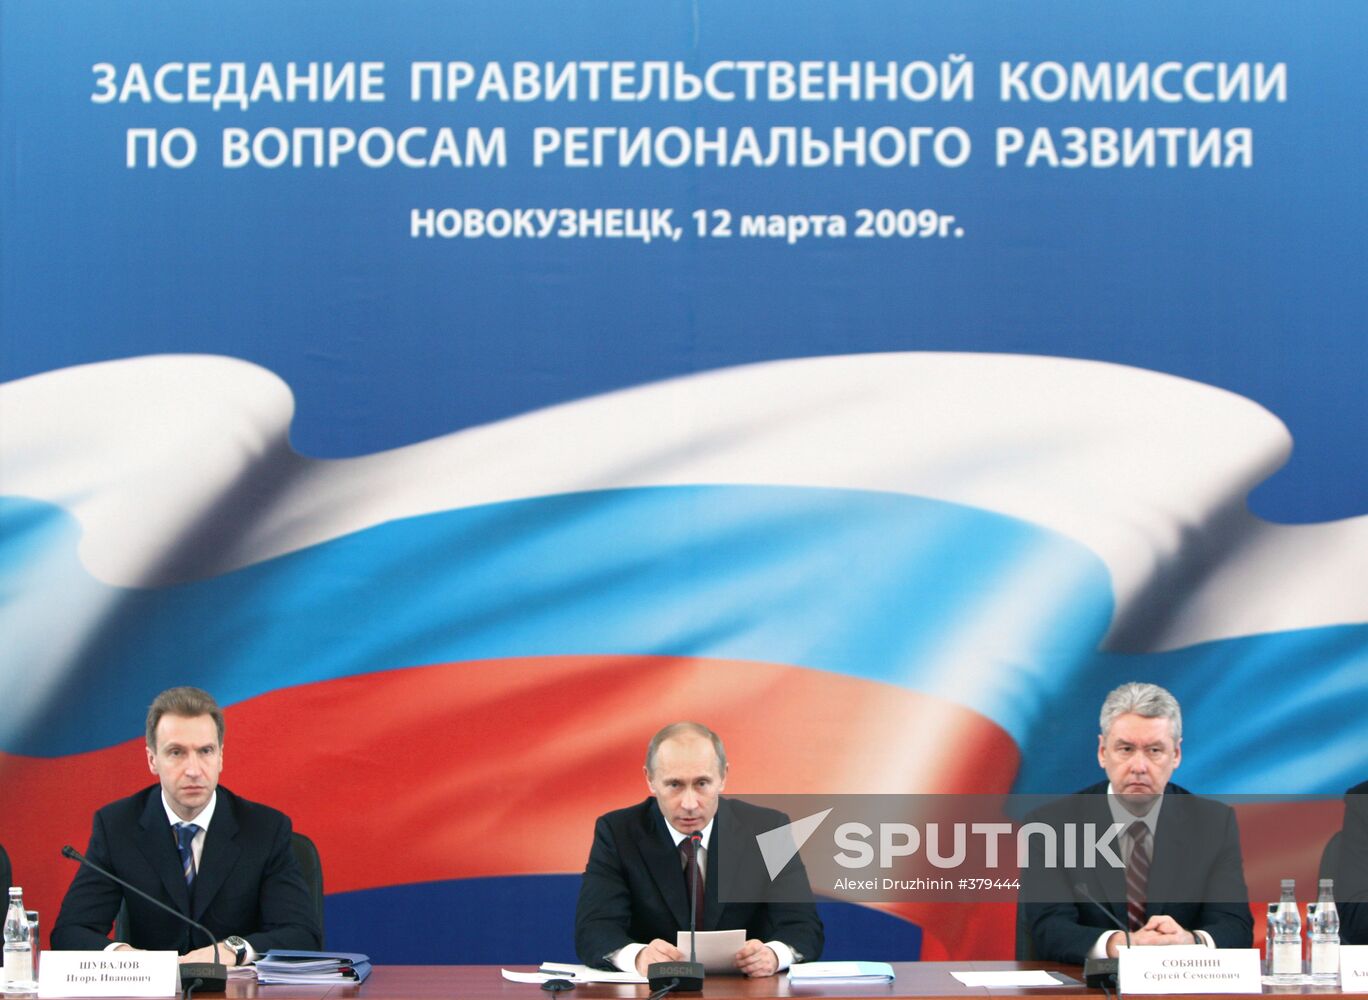 Vladimir Putin visits Novokuznetsk